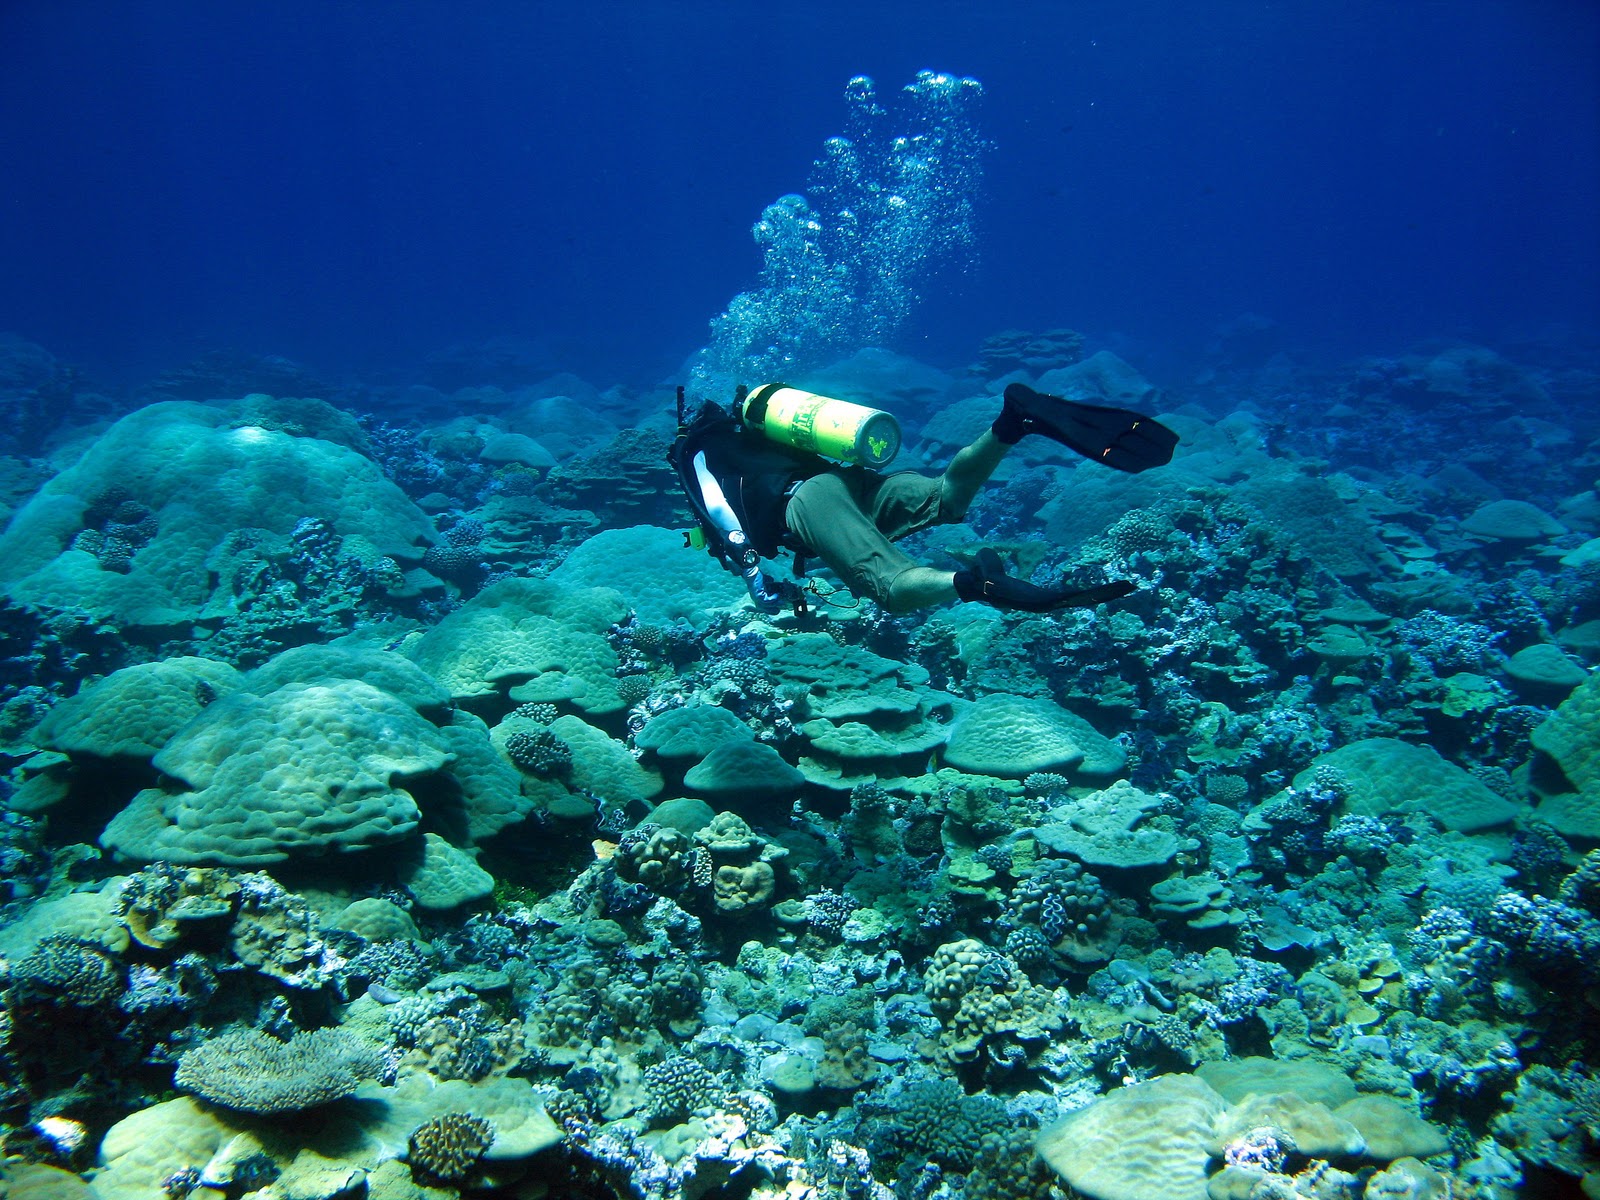 can you visit kingman reef